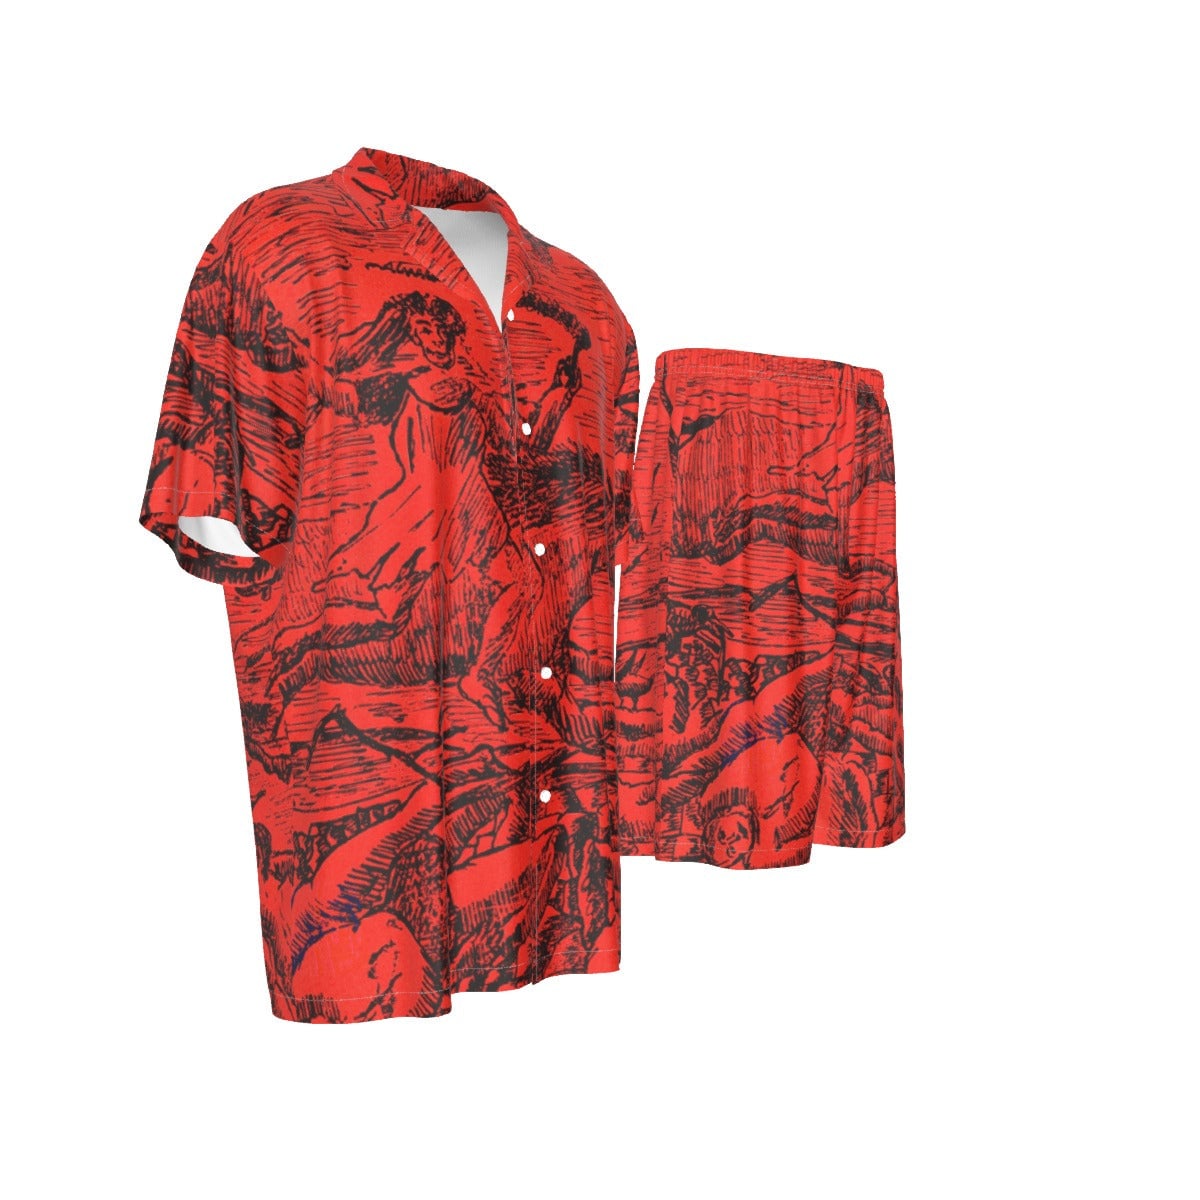 La Guerre The War by Henri Rousseau Art Silk Shirt Suit Set